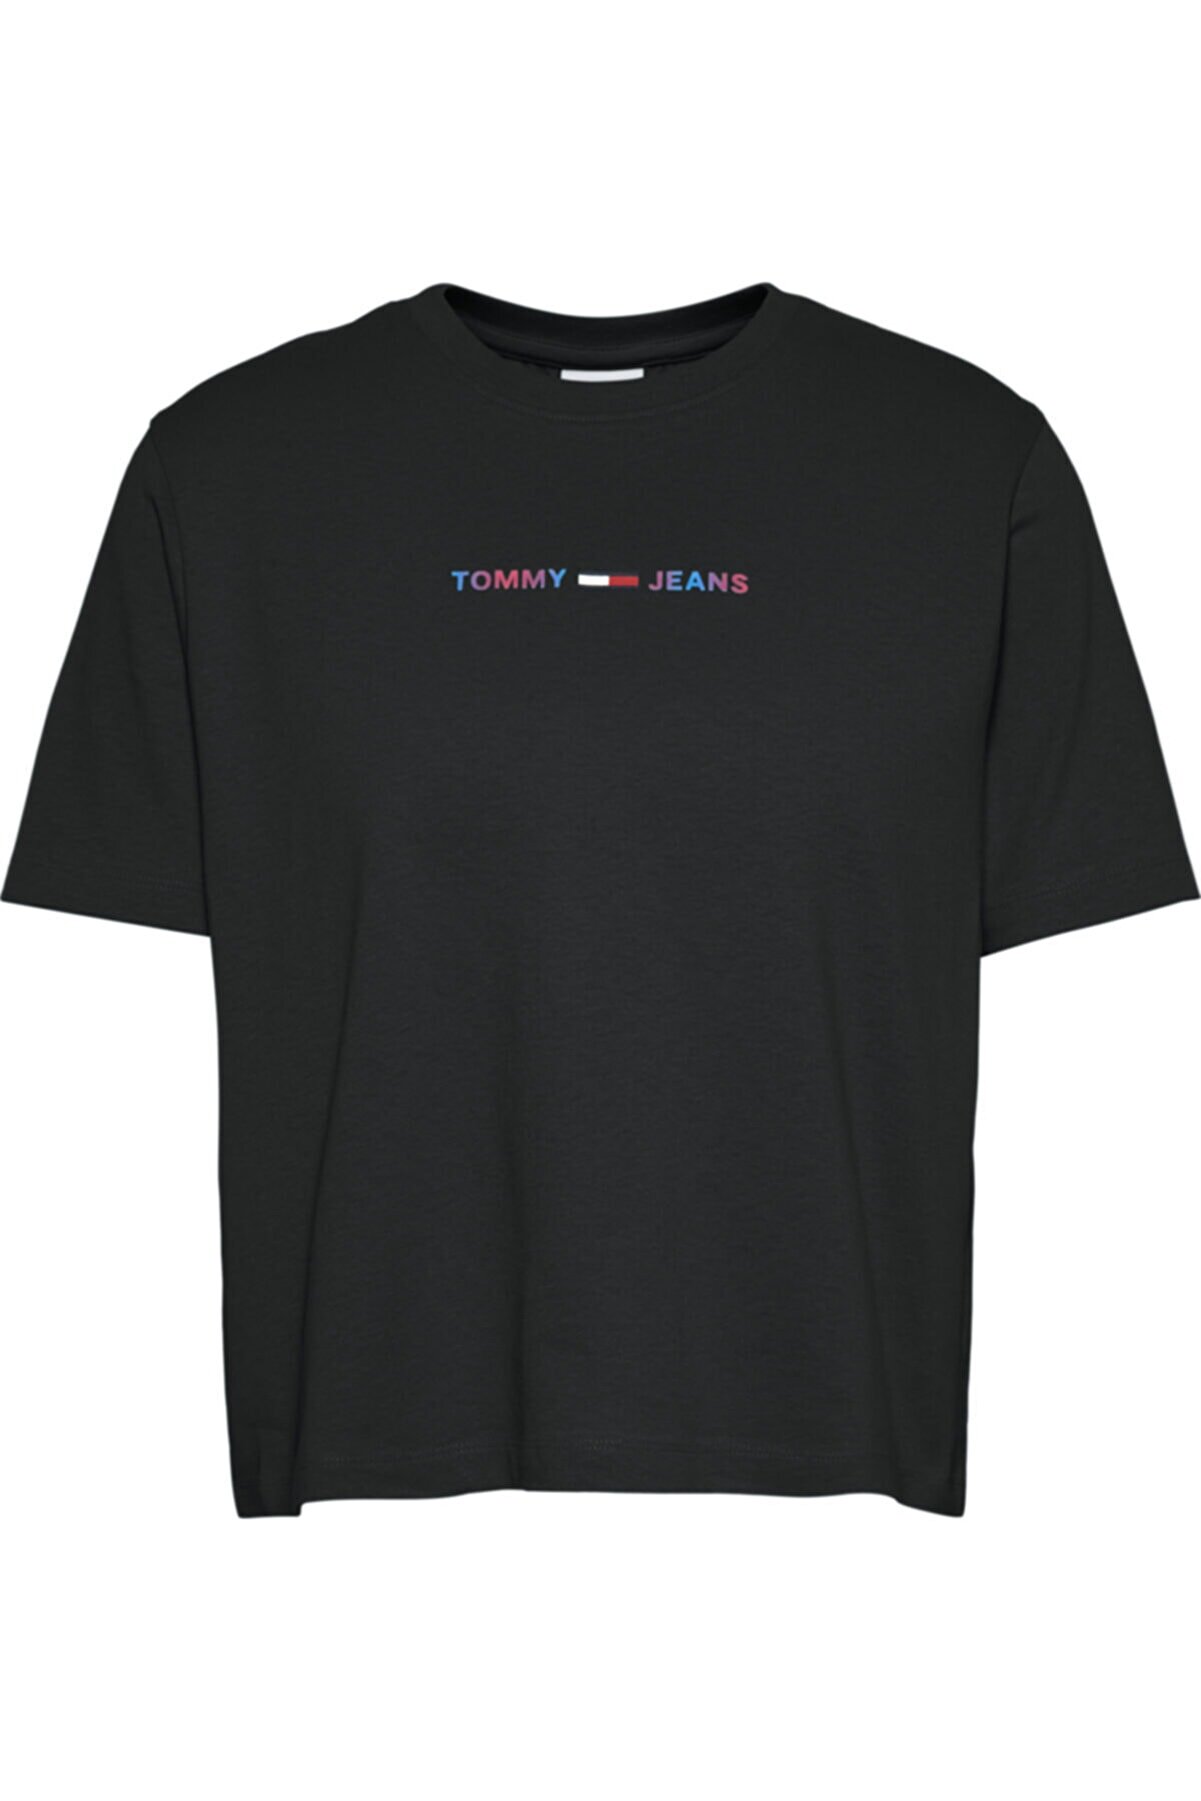 Tommy Hilfiger Tjw Crop Multi Linear T-shirt